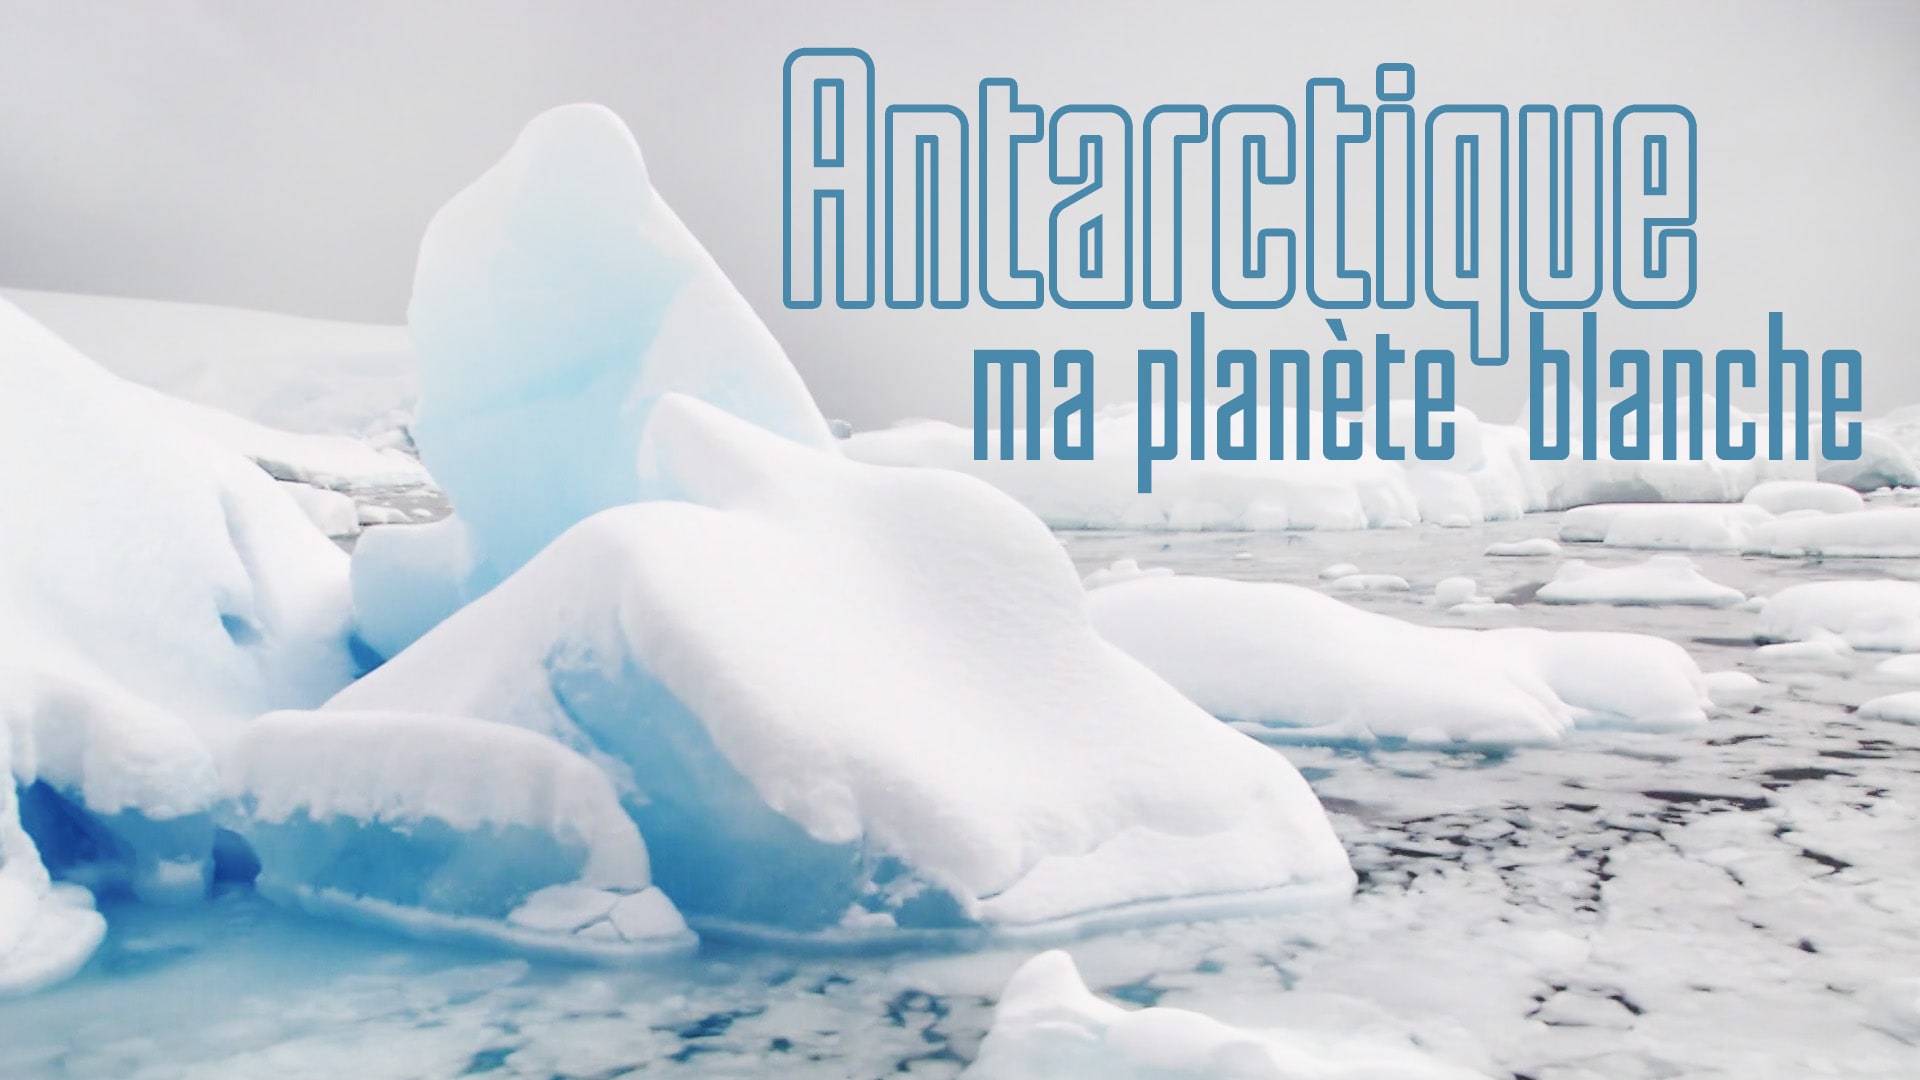 Antarctique, ma planète blanche